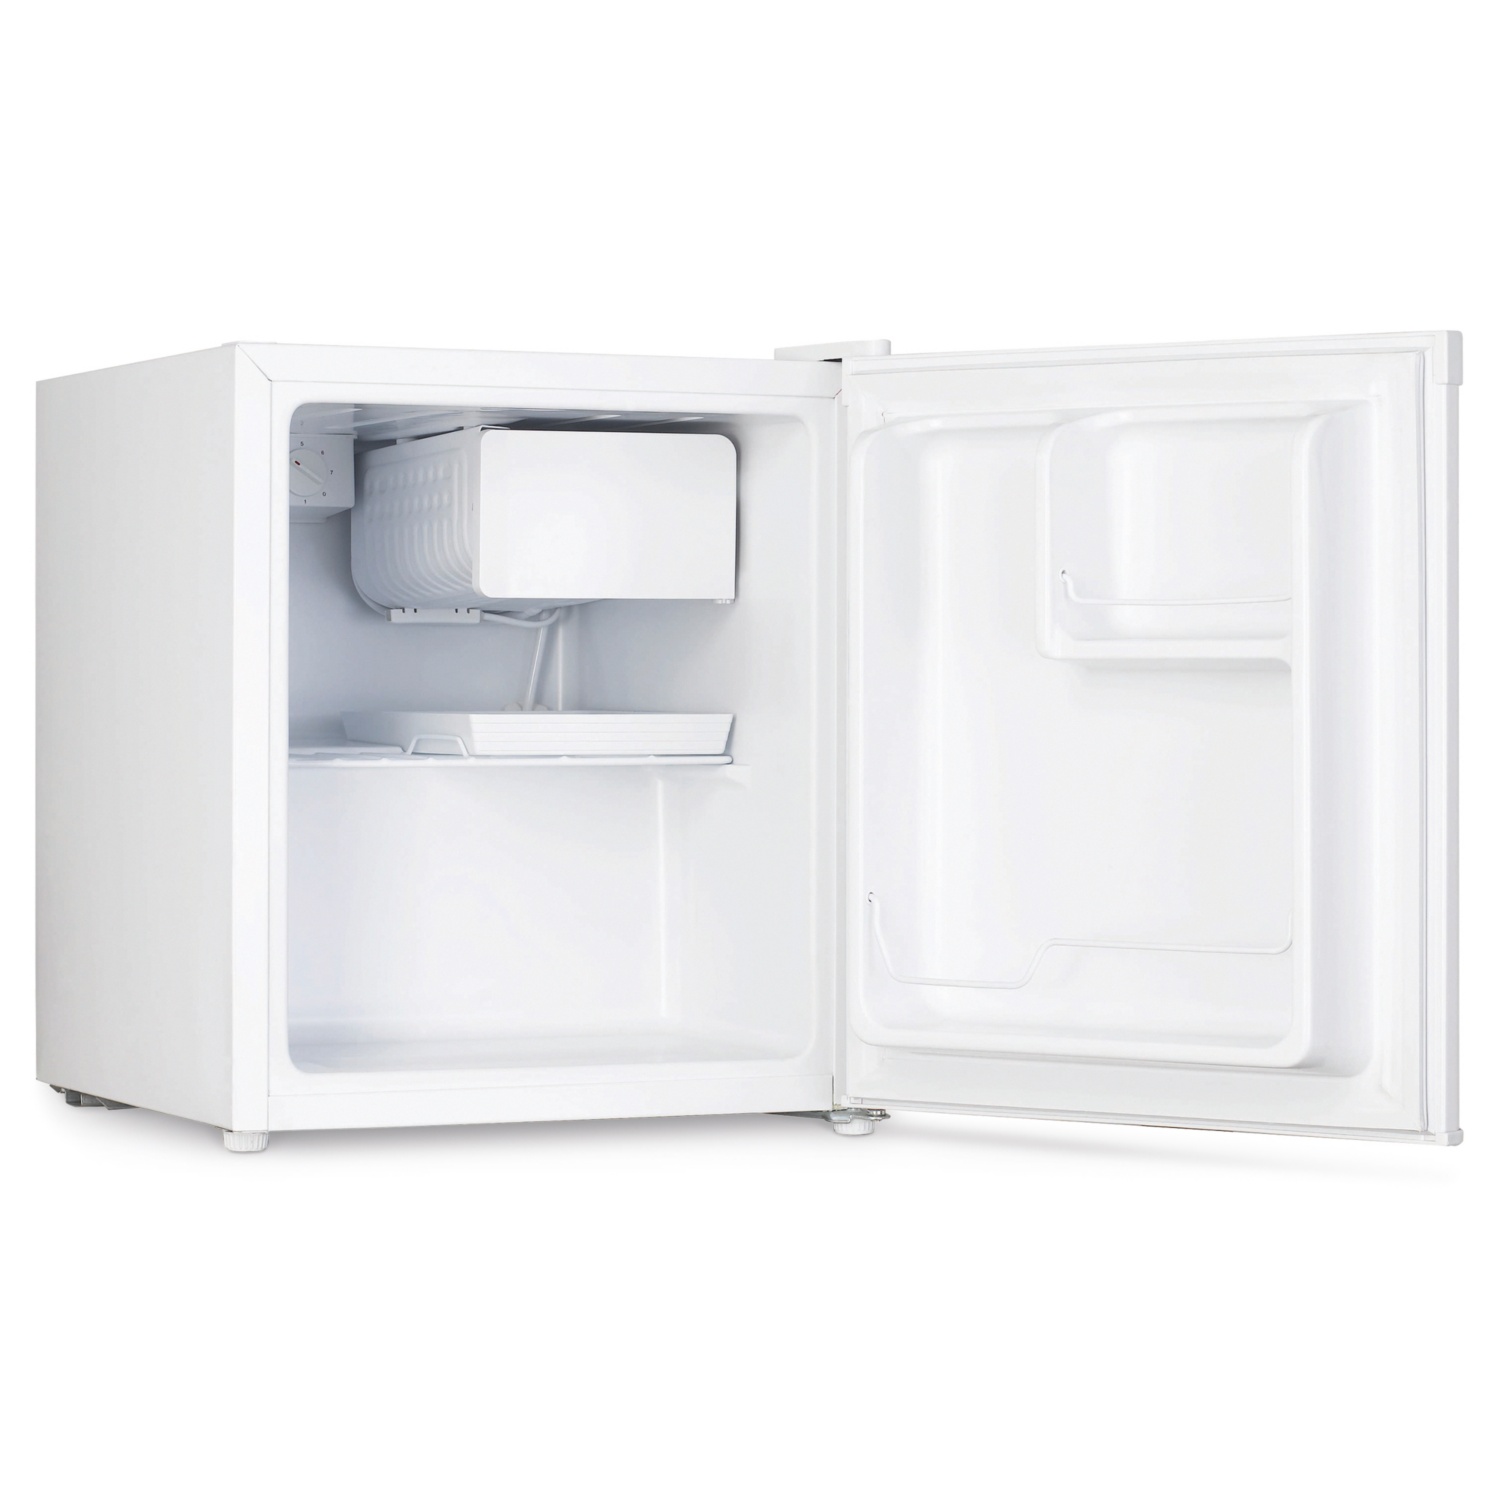 NORDFROST Mini-Kühlschrank mit Eisfach